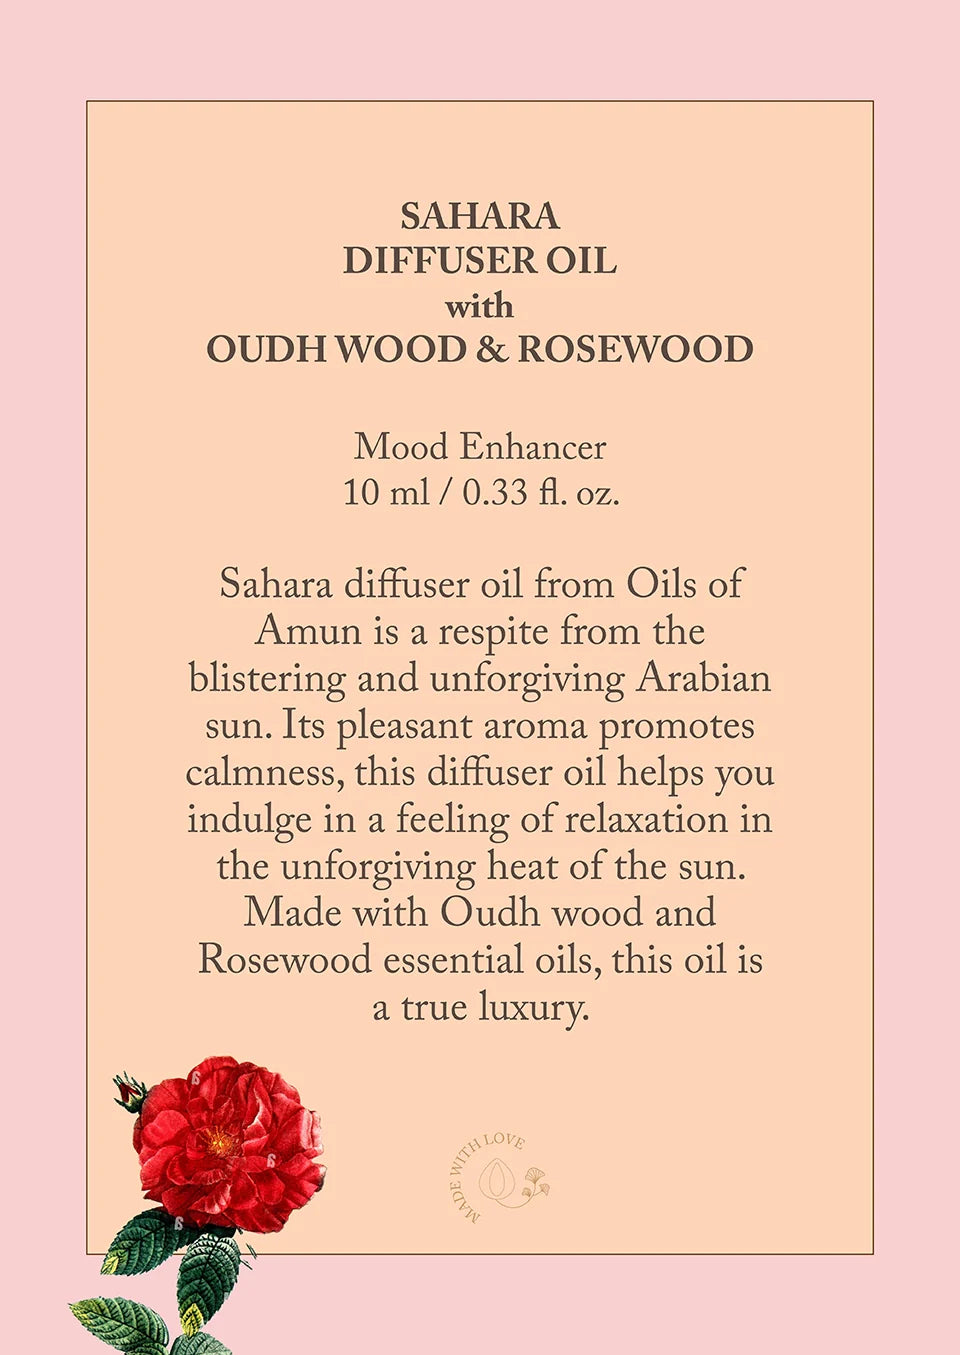 Sahara Diffuser Oil Description